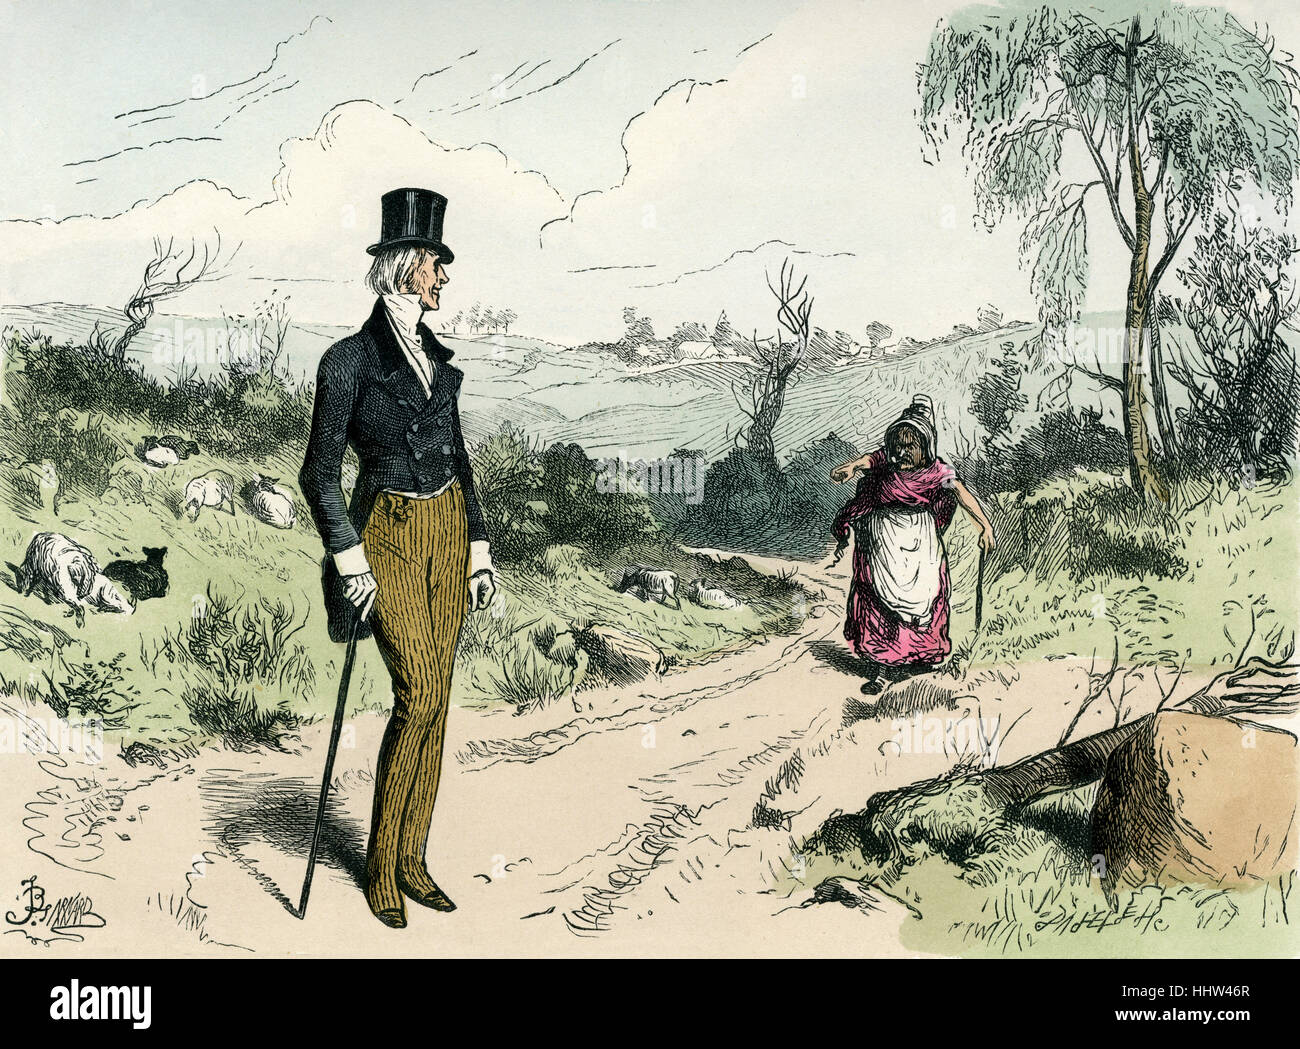 Dombey und Sohn von Charles Dickens. Bildunterschrift lautet: "Gehen Sie und ihr entgegen".   Illustration von Fred Barnard. Kupferstich von Dalziel. Stockfoto